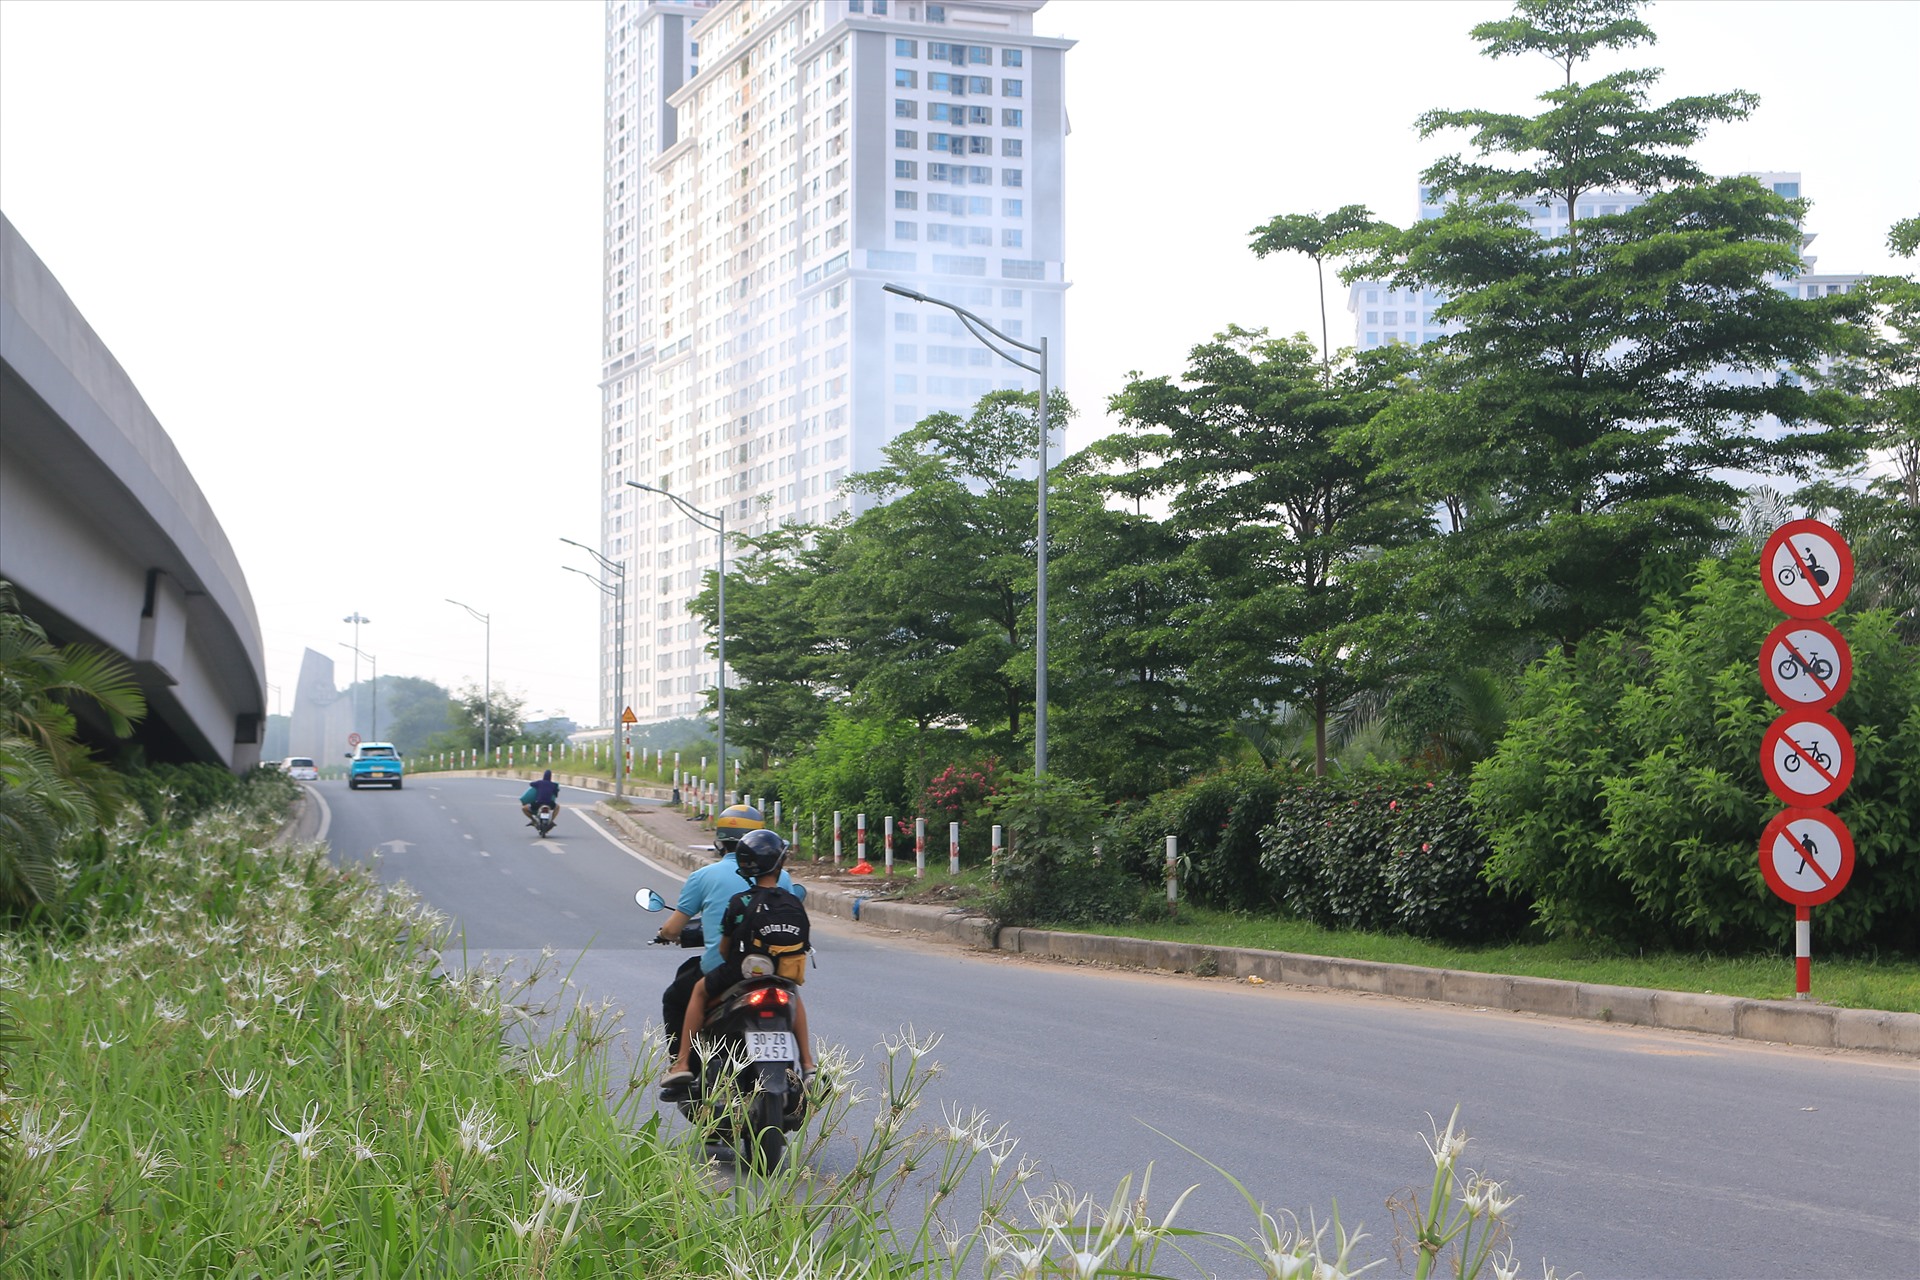 Tương tự, tại tầng 2 của cầu Thăng Long (Hà Nội) cù đã có quy định cấm xe máy đi vào, song nhiều người vẫn bất chấp điều khiển phương tiện đi vào làn đường này.